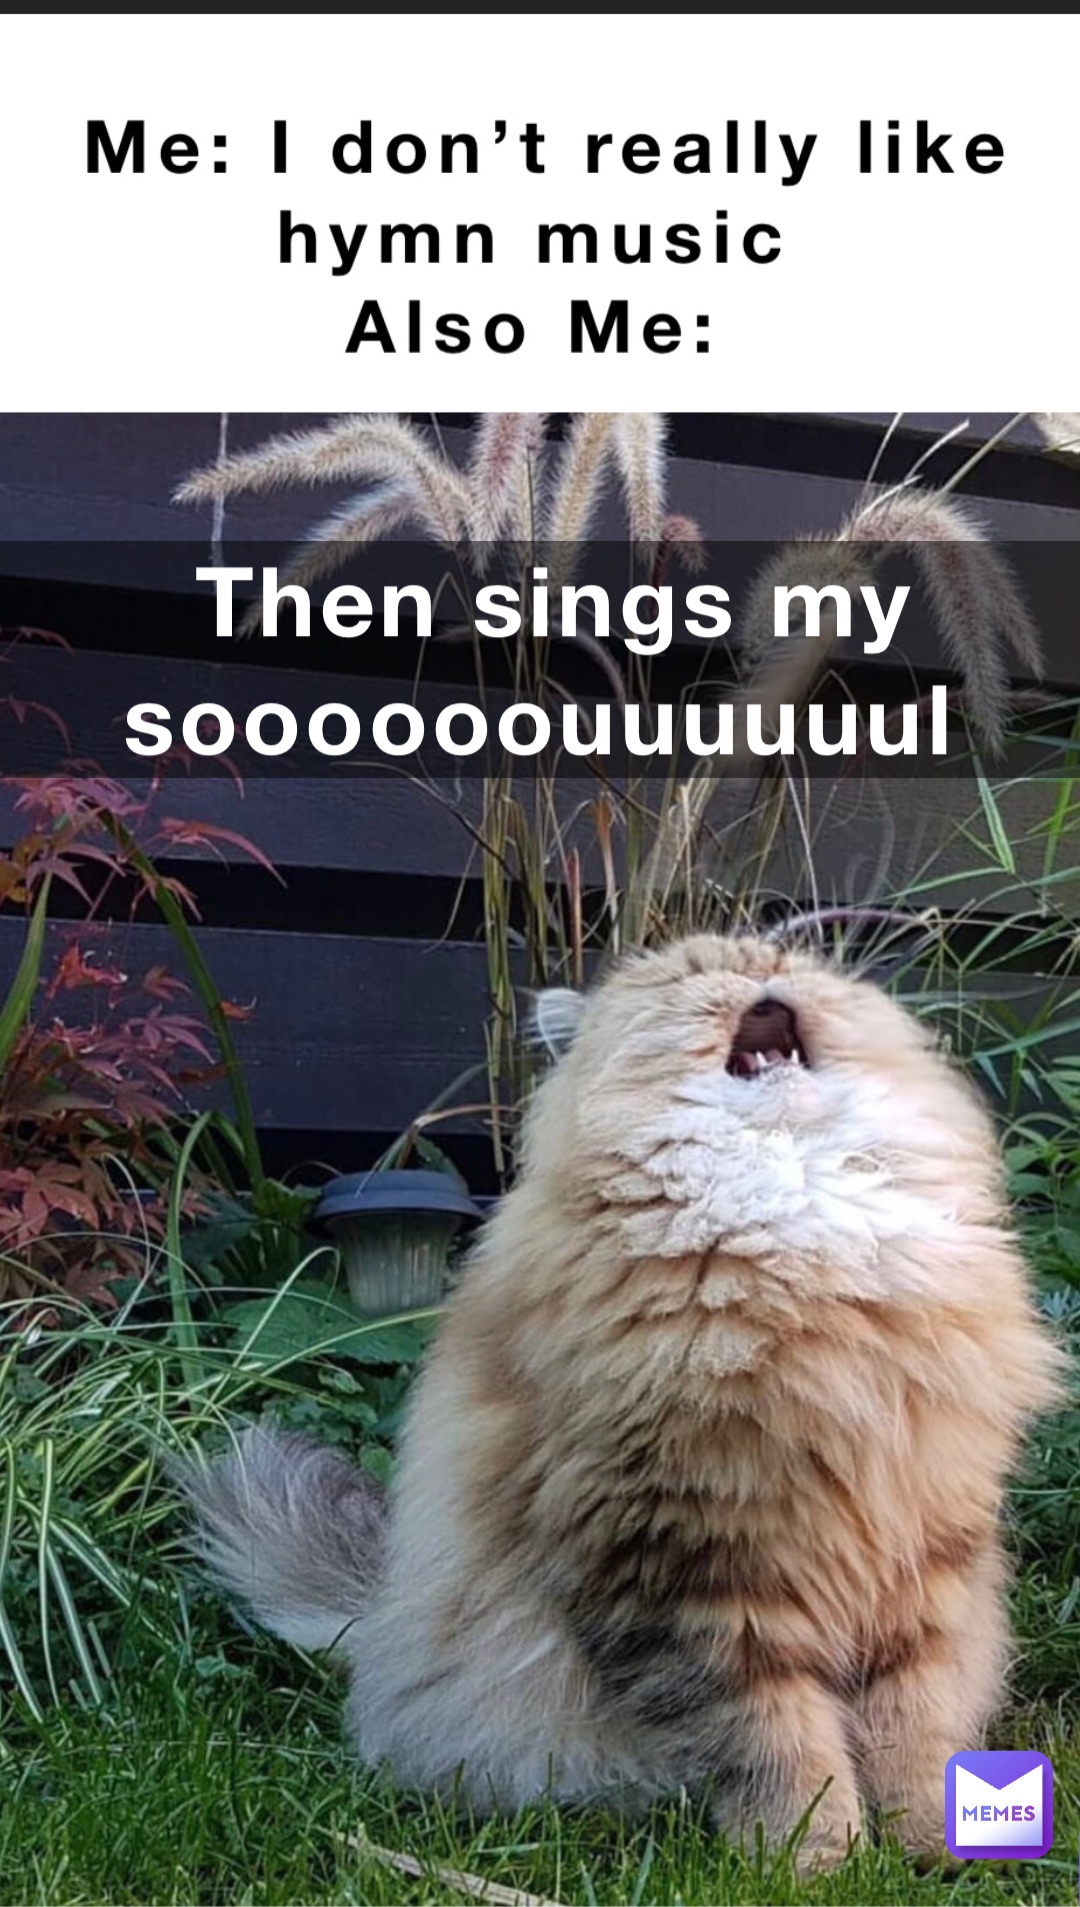 Then sings my soooooouuuuuul